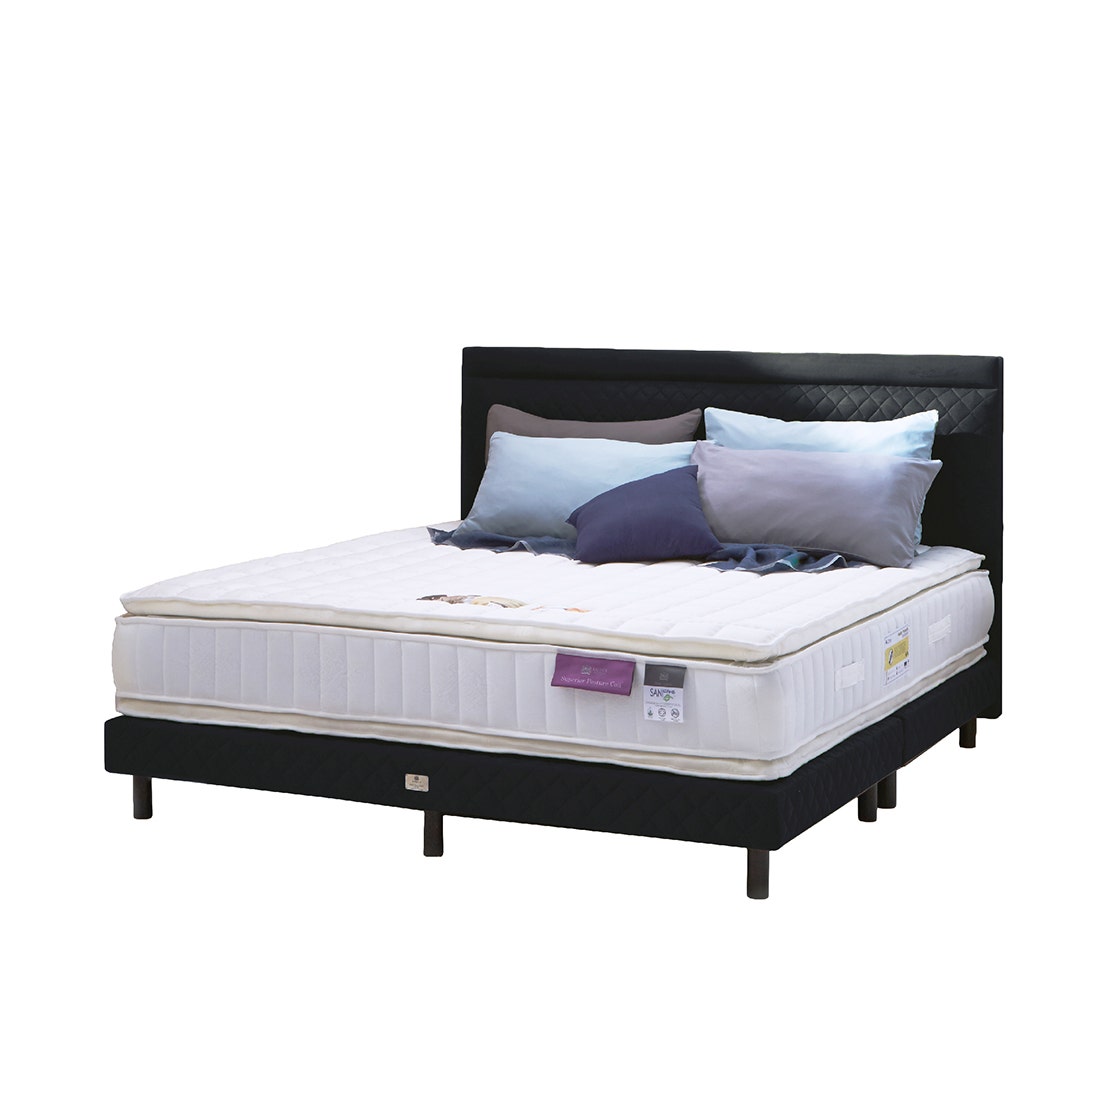 39005131-mattress-bedding-mattresses-spring-mattresses-02